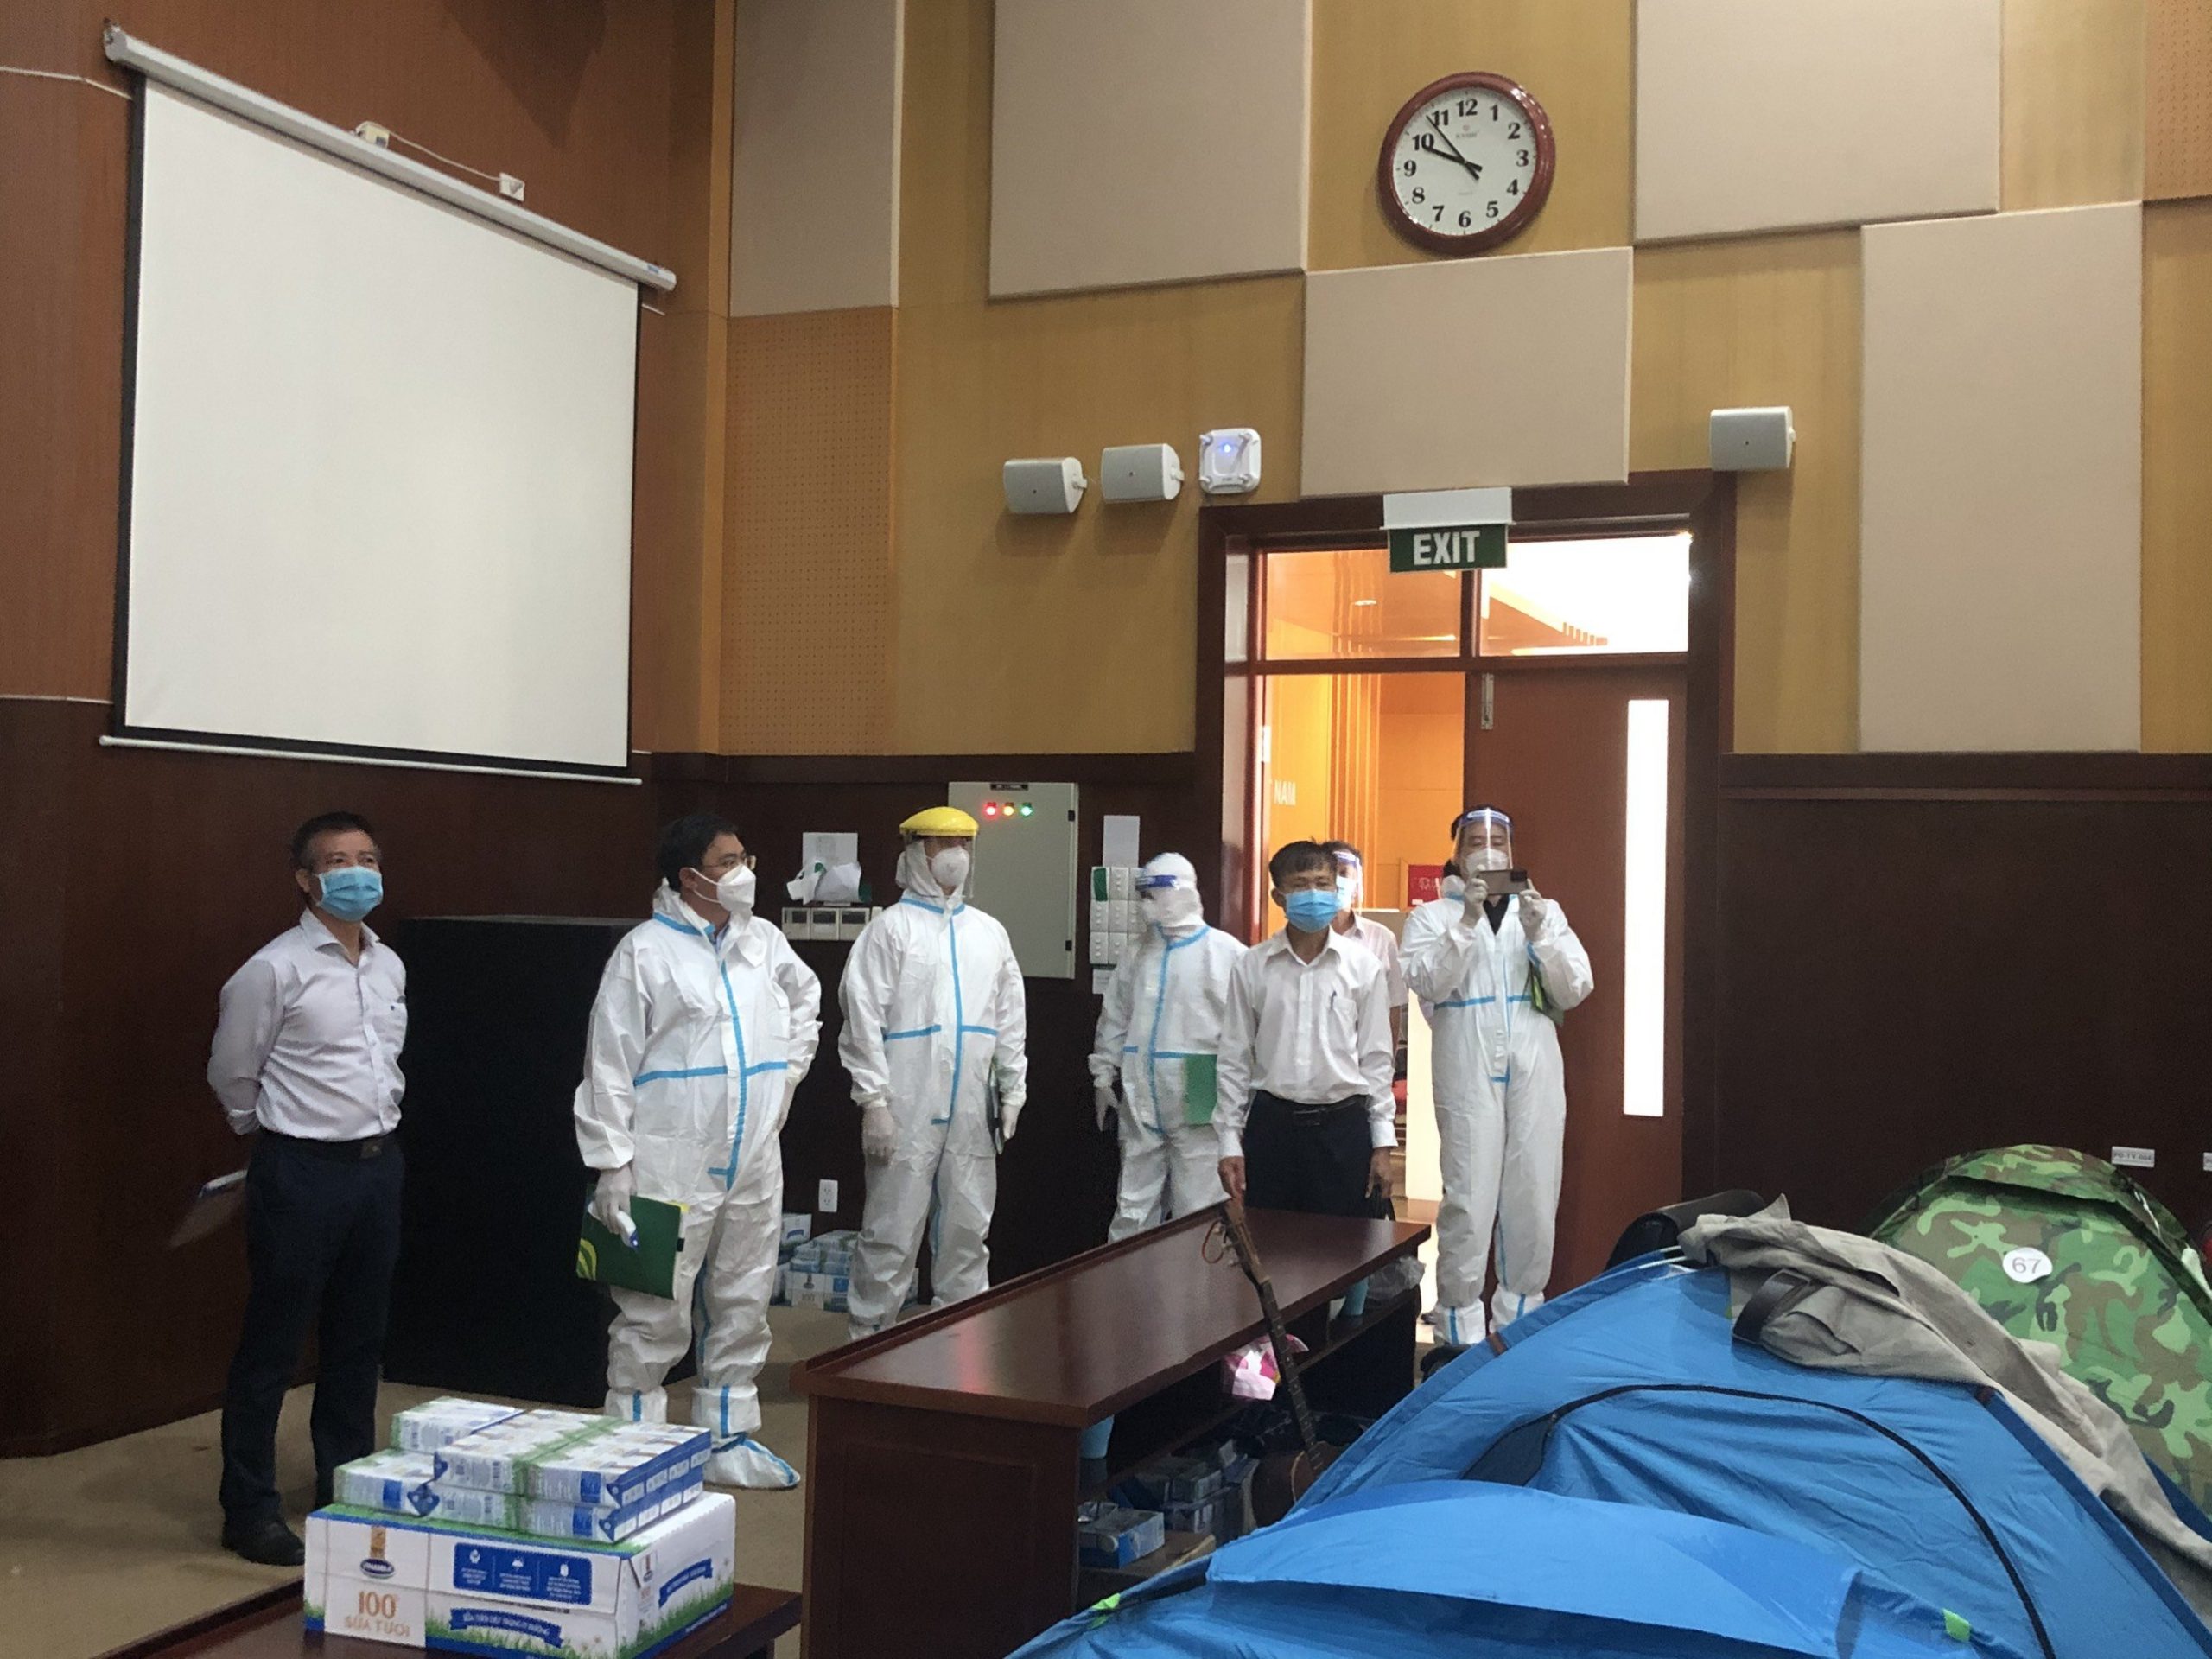 Đoàn công tác Bộ Y tế kiểm tra công tác phòng chống dịch của Nhà máy Đạm Phú Mỹ